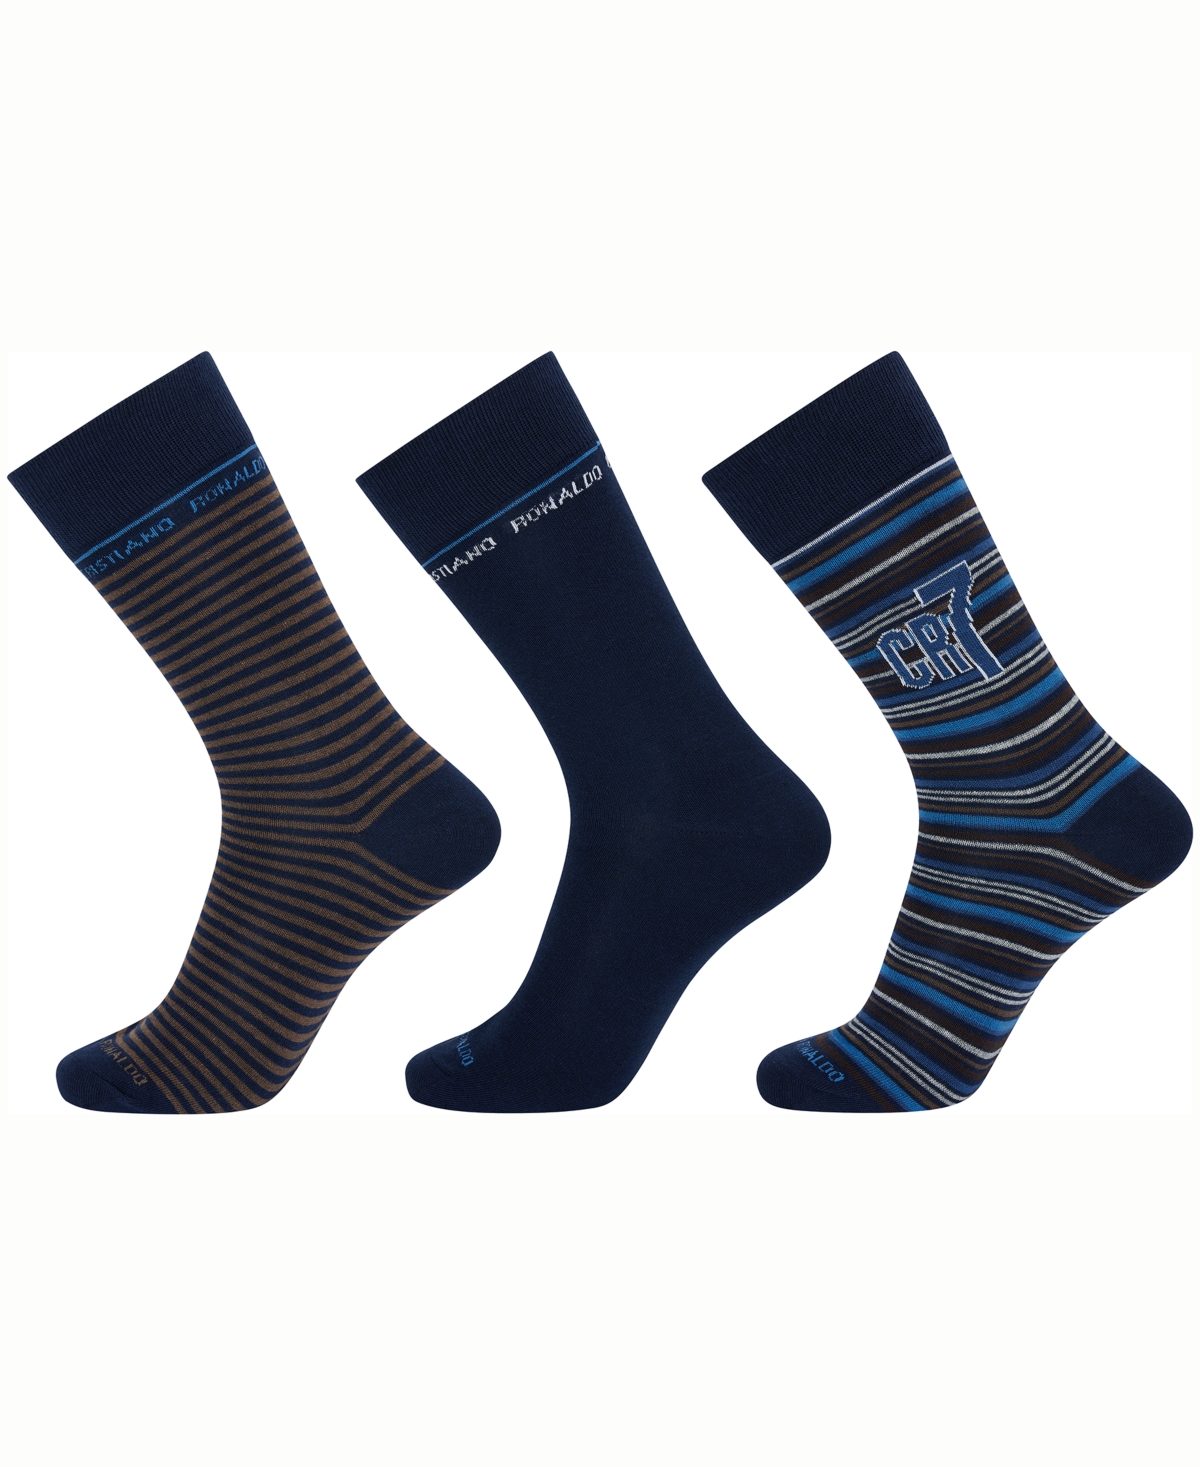 Men's Fashion Socks, Pack of 3 - Black, Blue, Gray